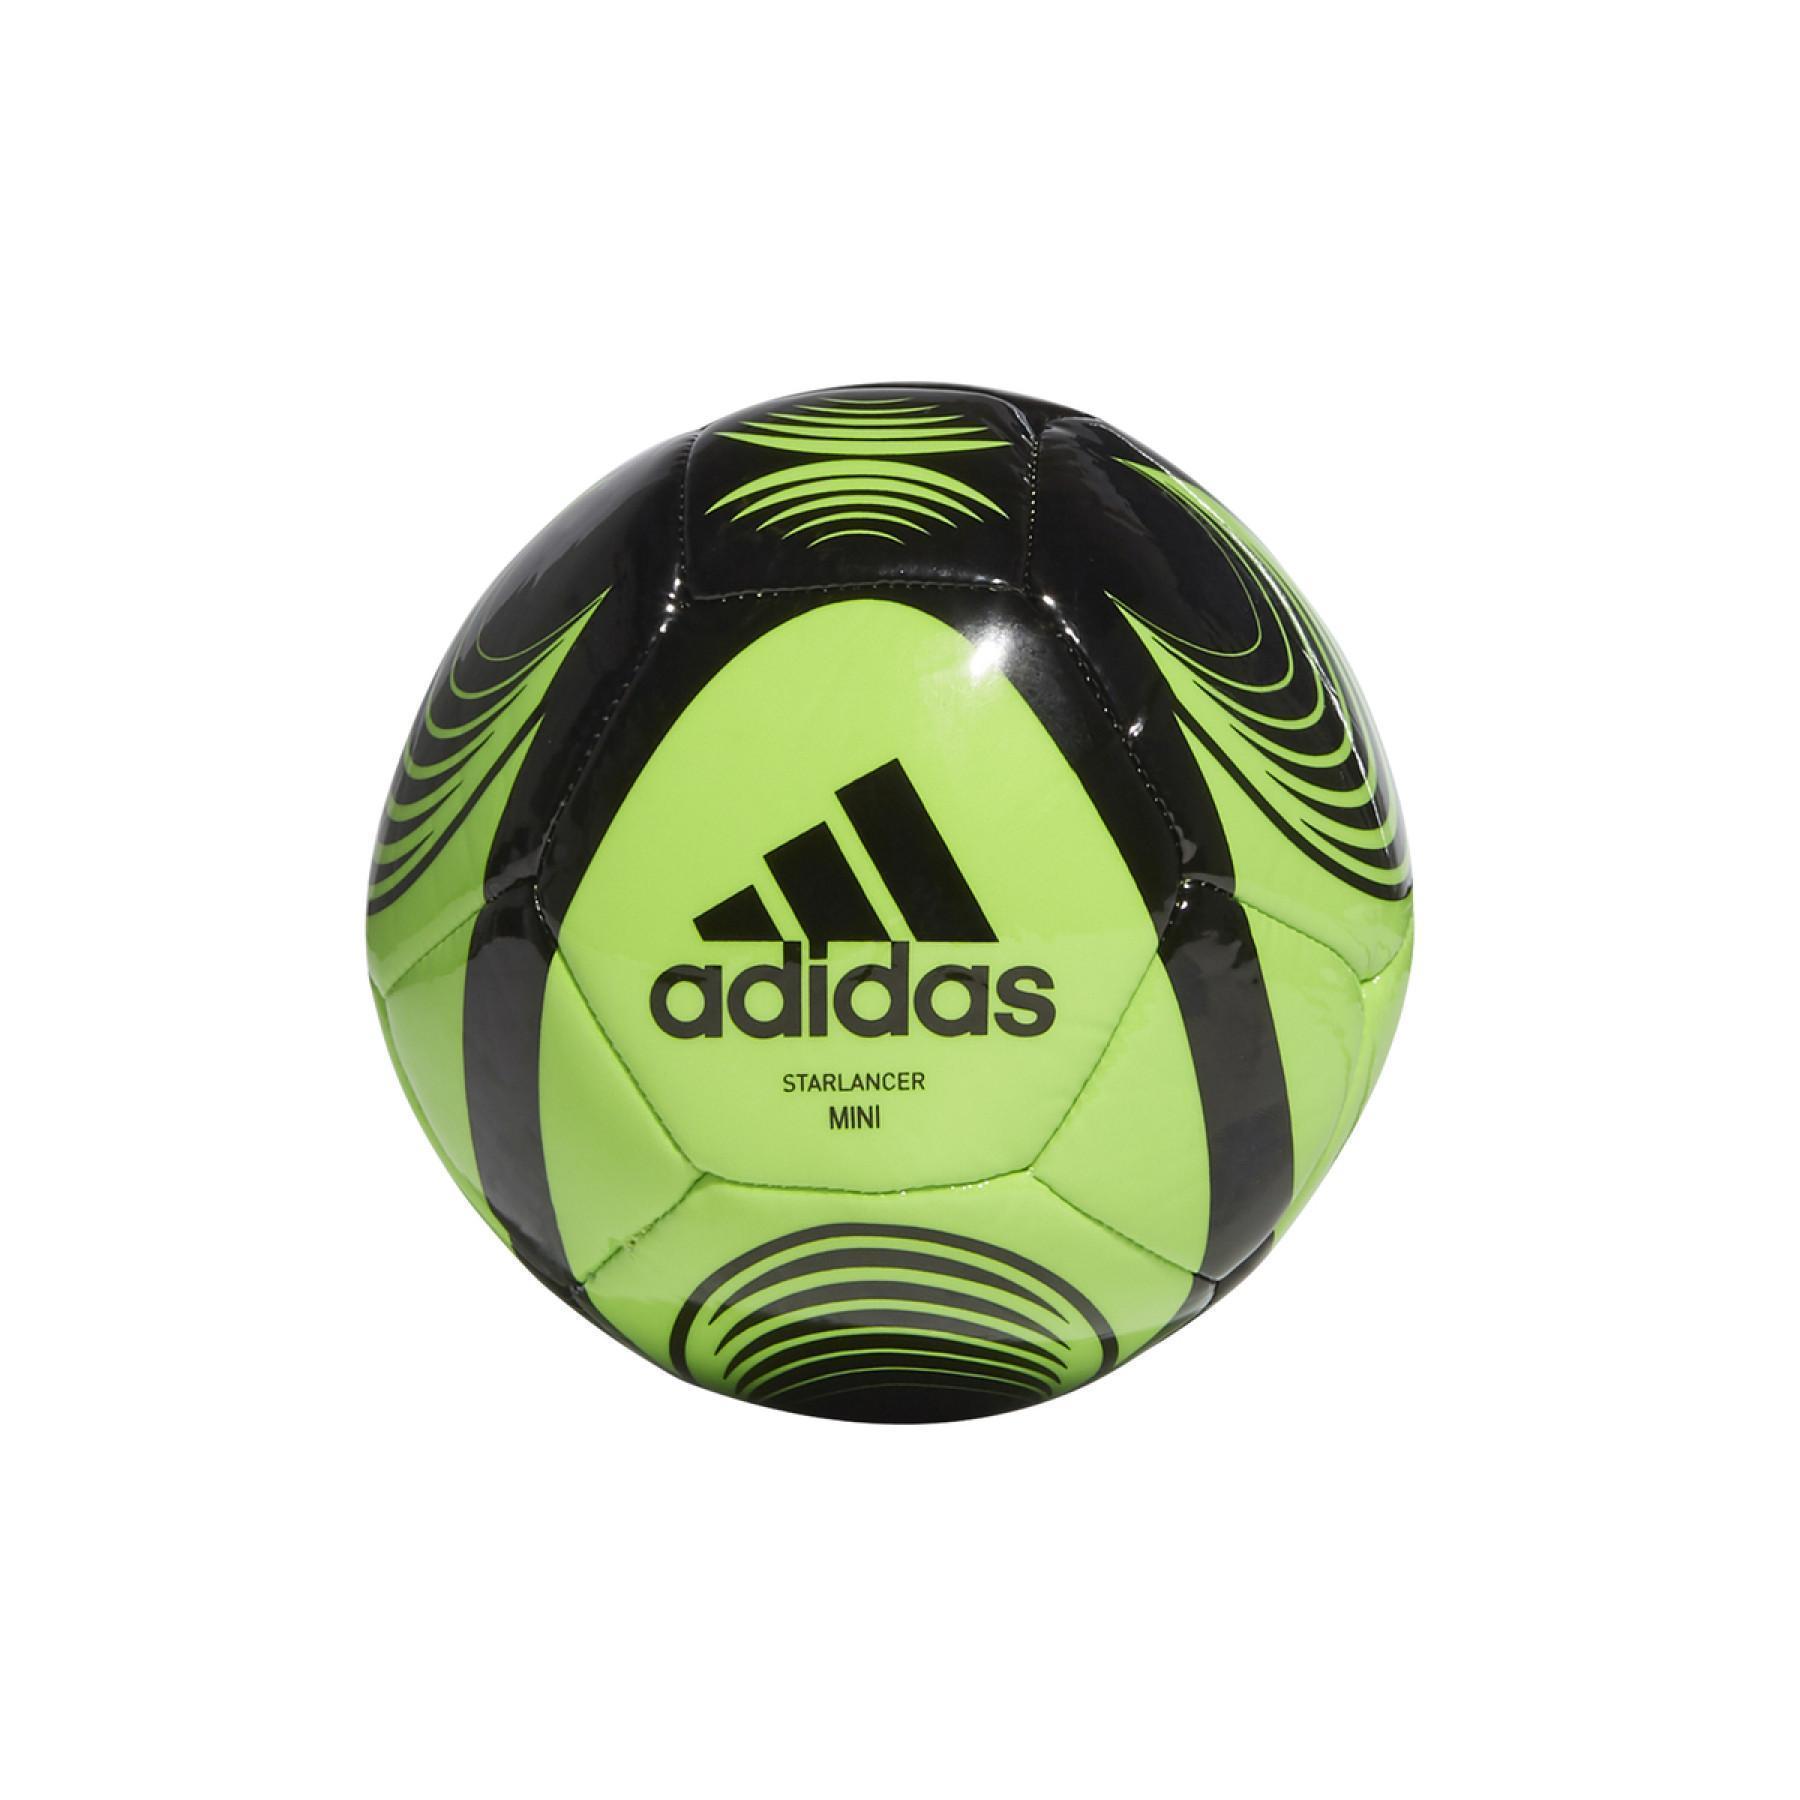 Mini ballon de football adidas Starlancer